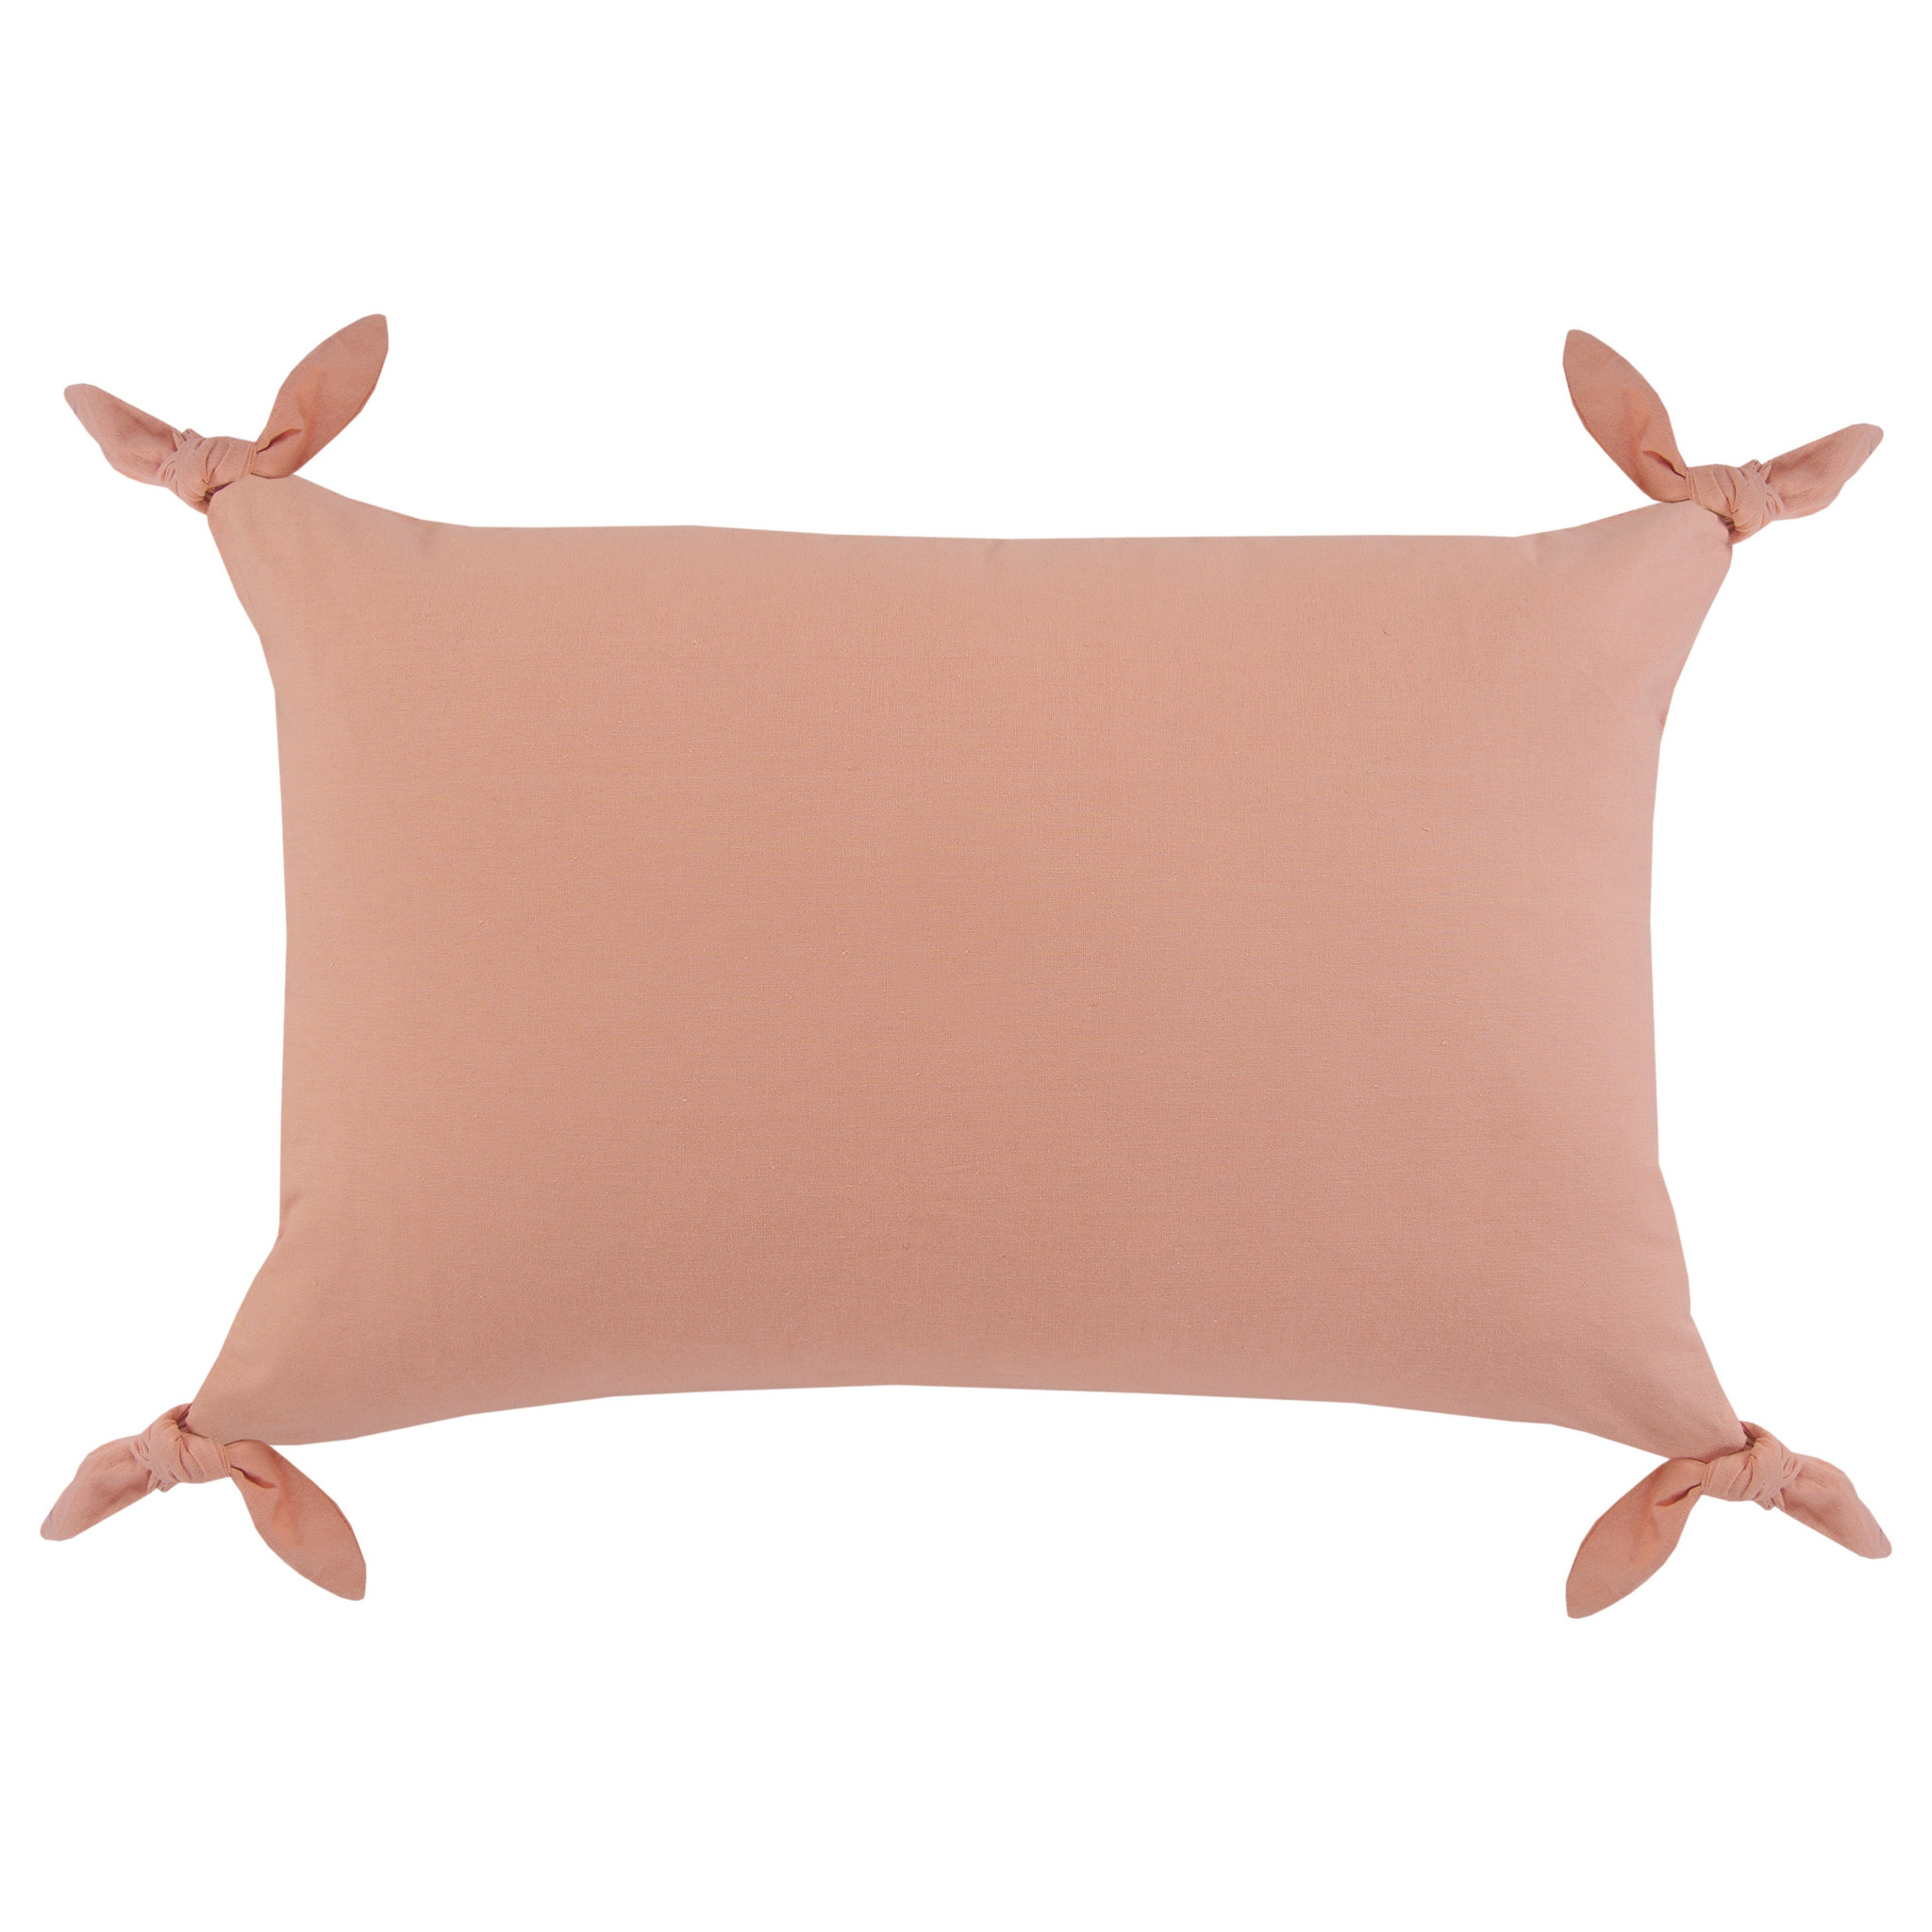 16" X 24" Blush Pink 100% Cotton Zippered Pillow-517243-1